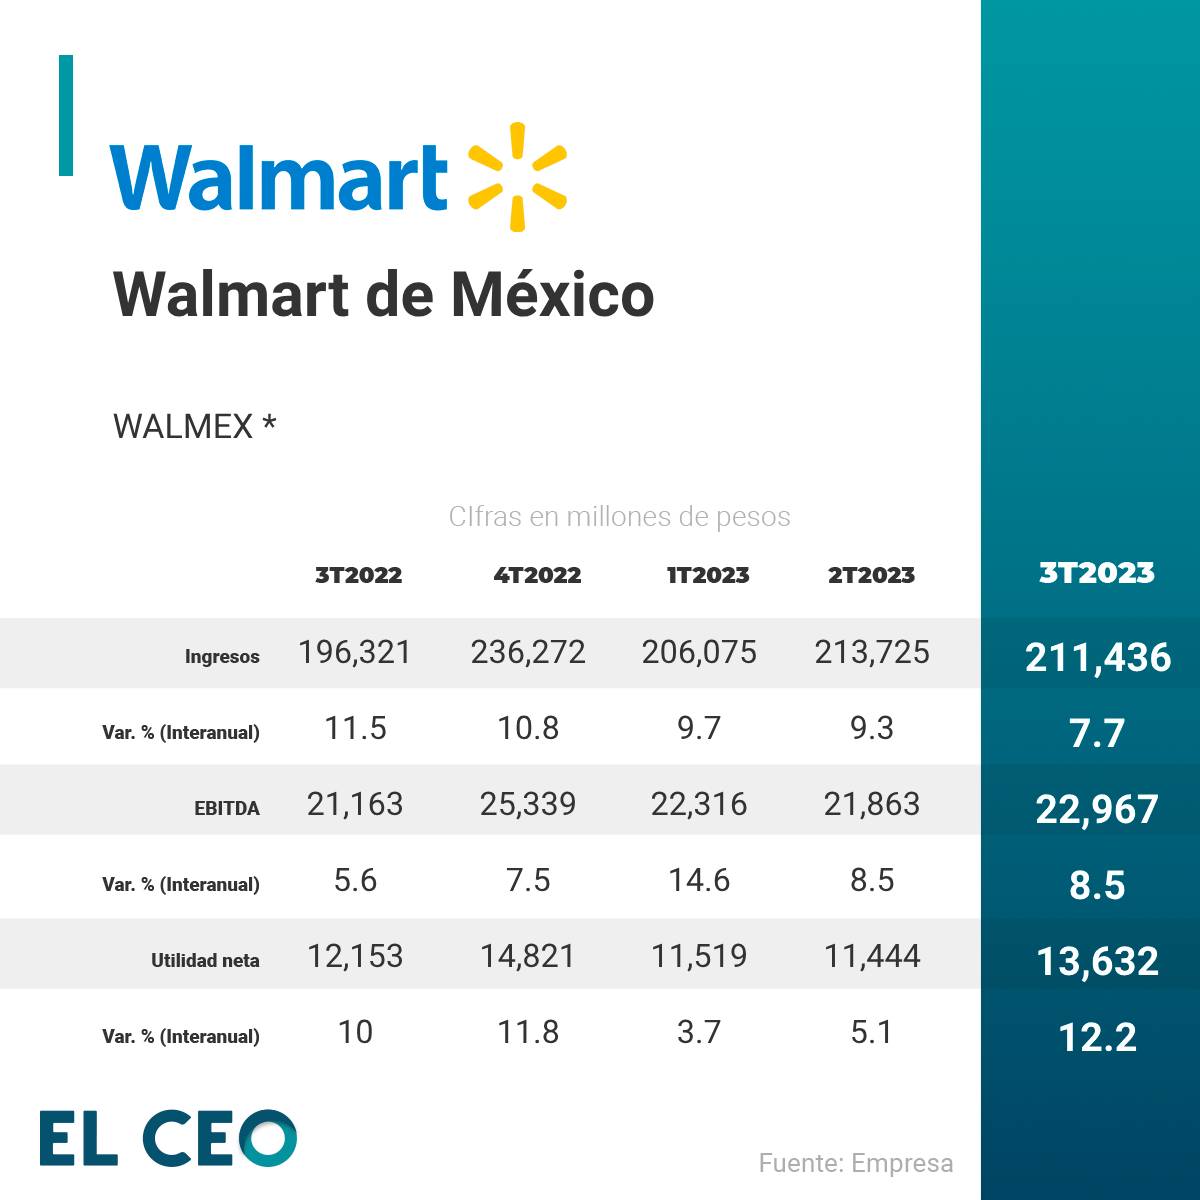 Walmart de México